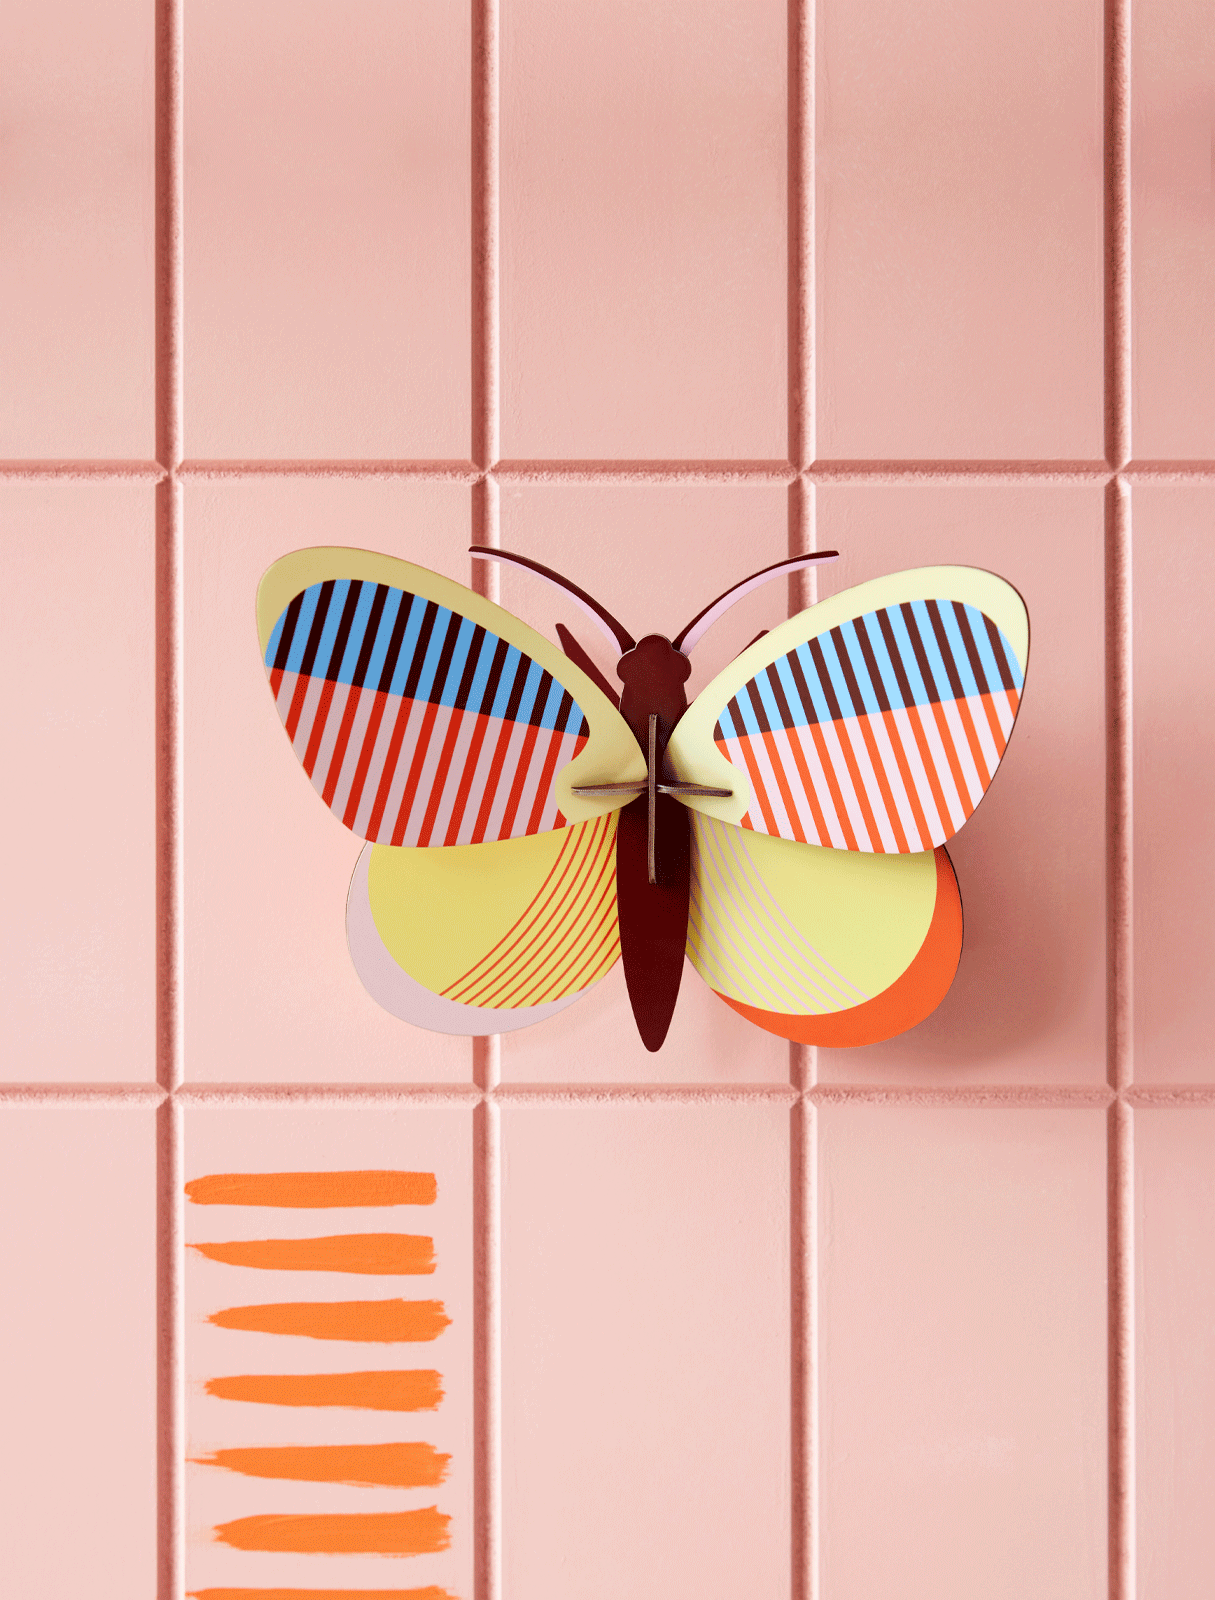 Sia Butterfly - 3D DIY Wall Art Kit